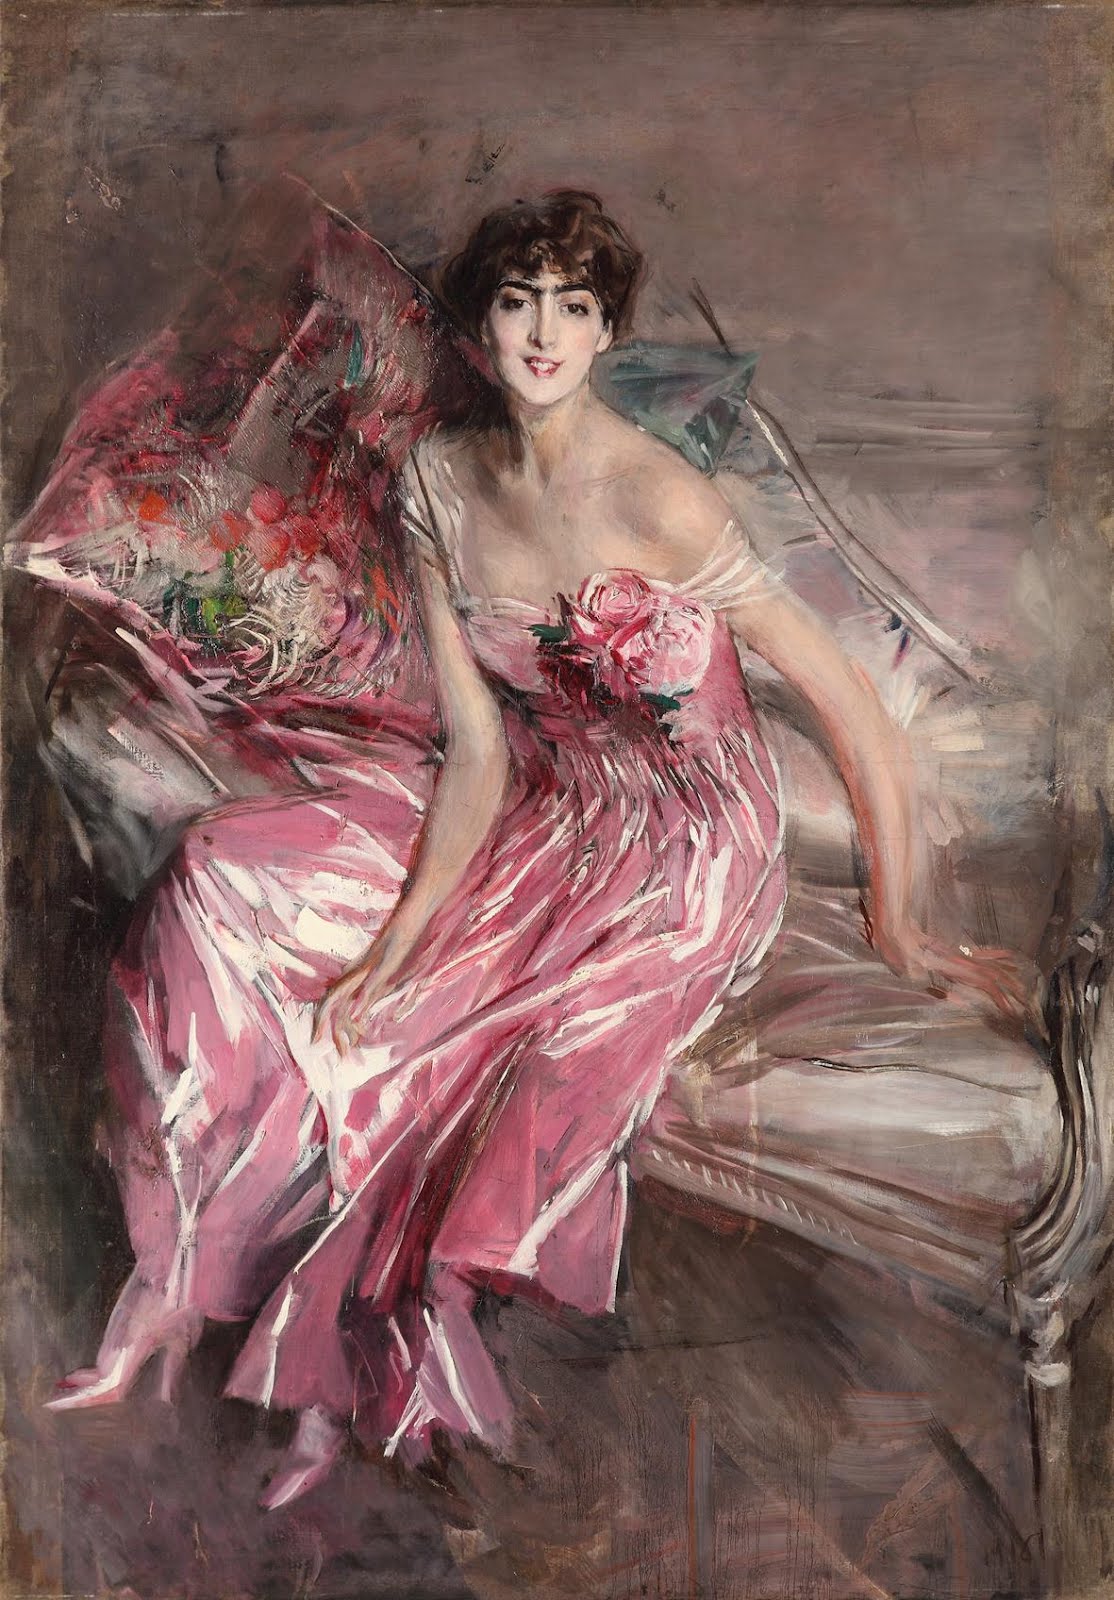 Doamna în roz by Giovanni Boldini - 1916 - 63 x 113 cm 